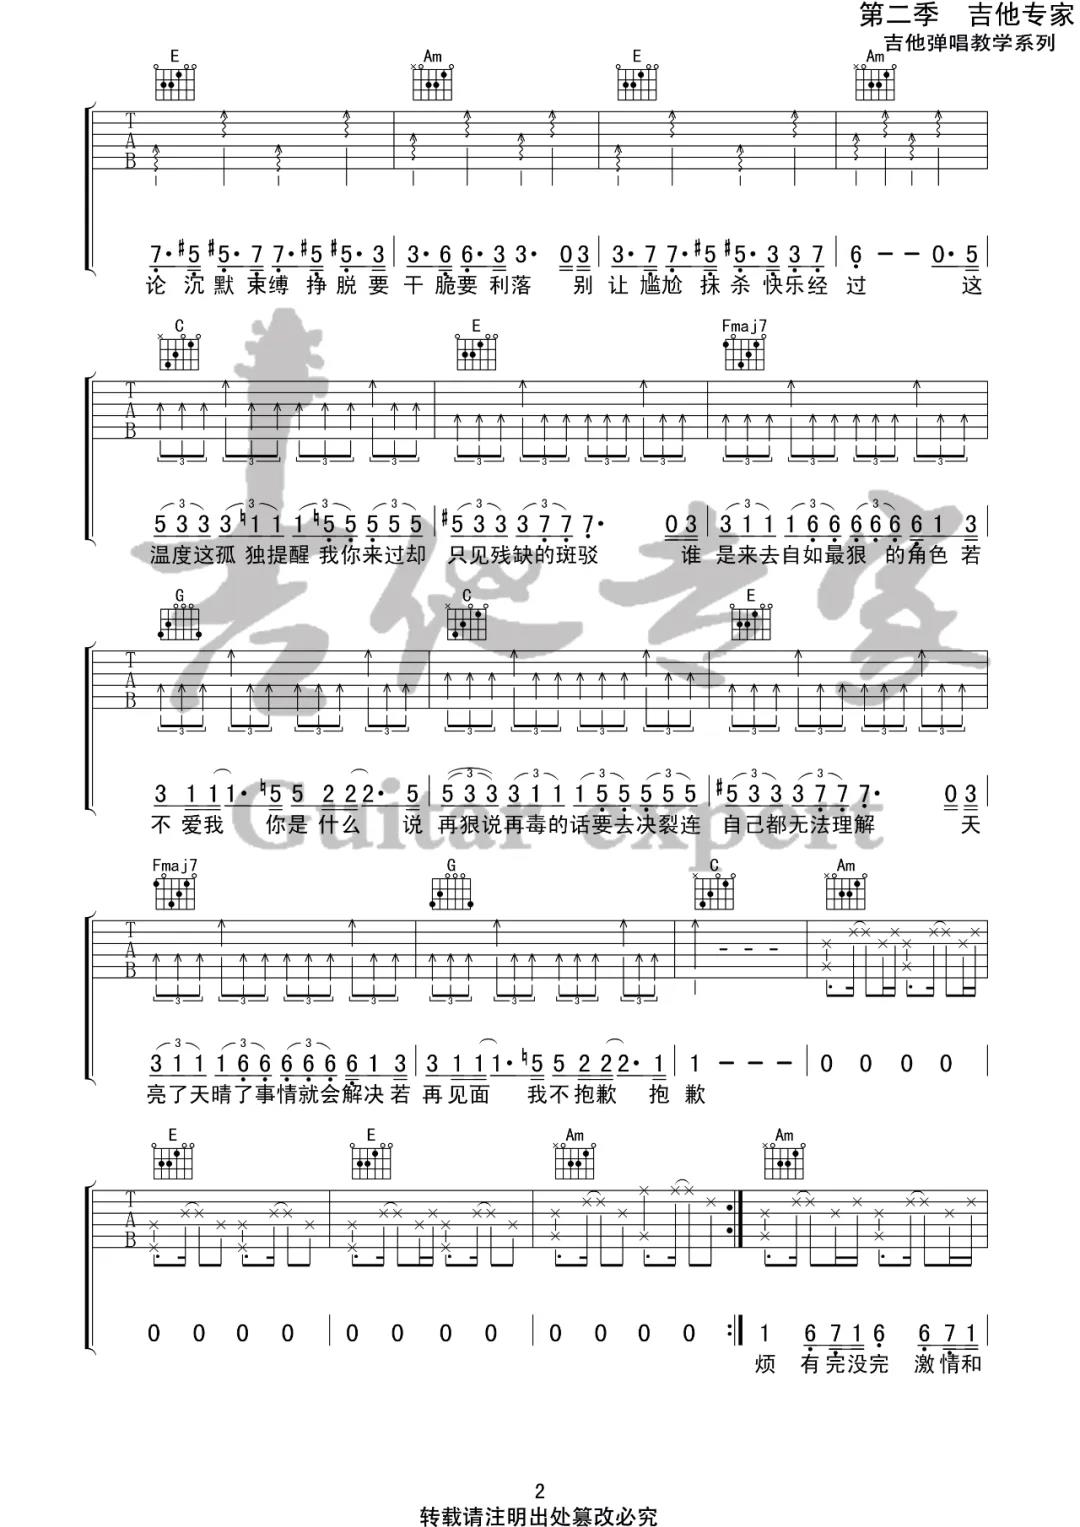 陈粒《抱歉抱歉》吉他谱(C调)-Guitar Music Score